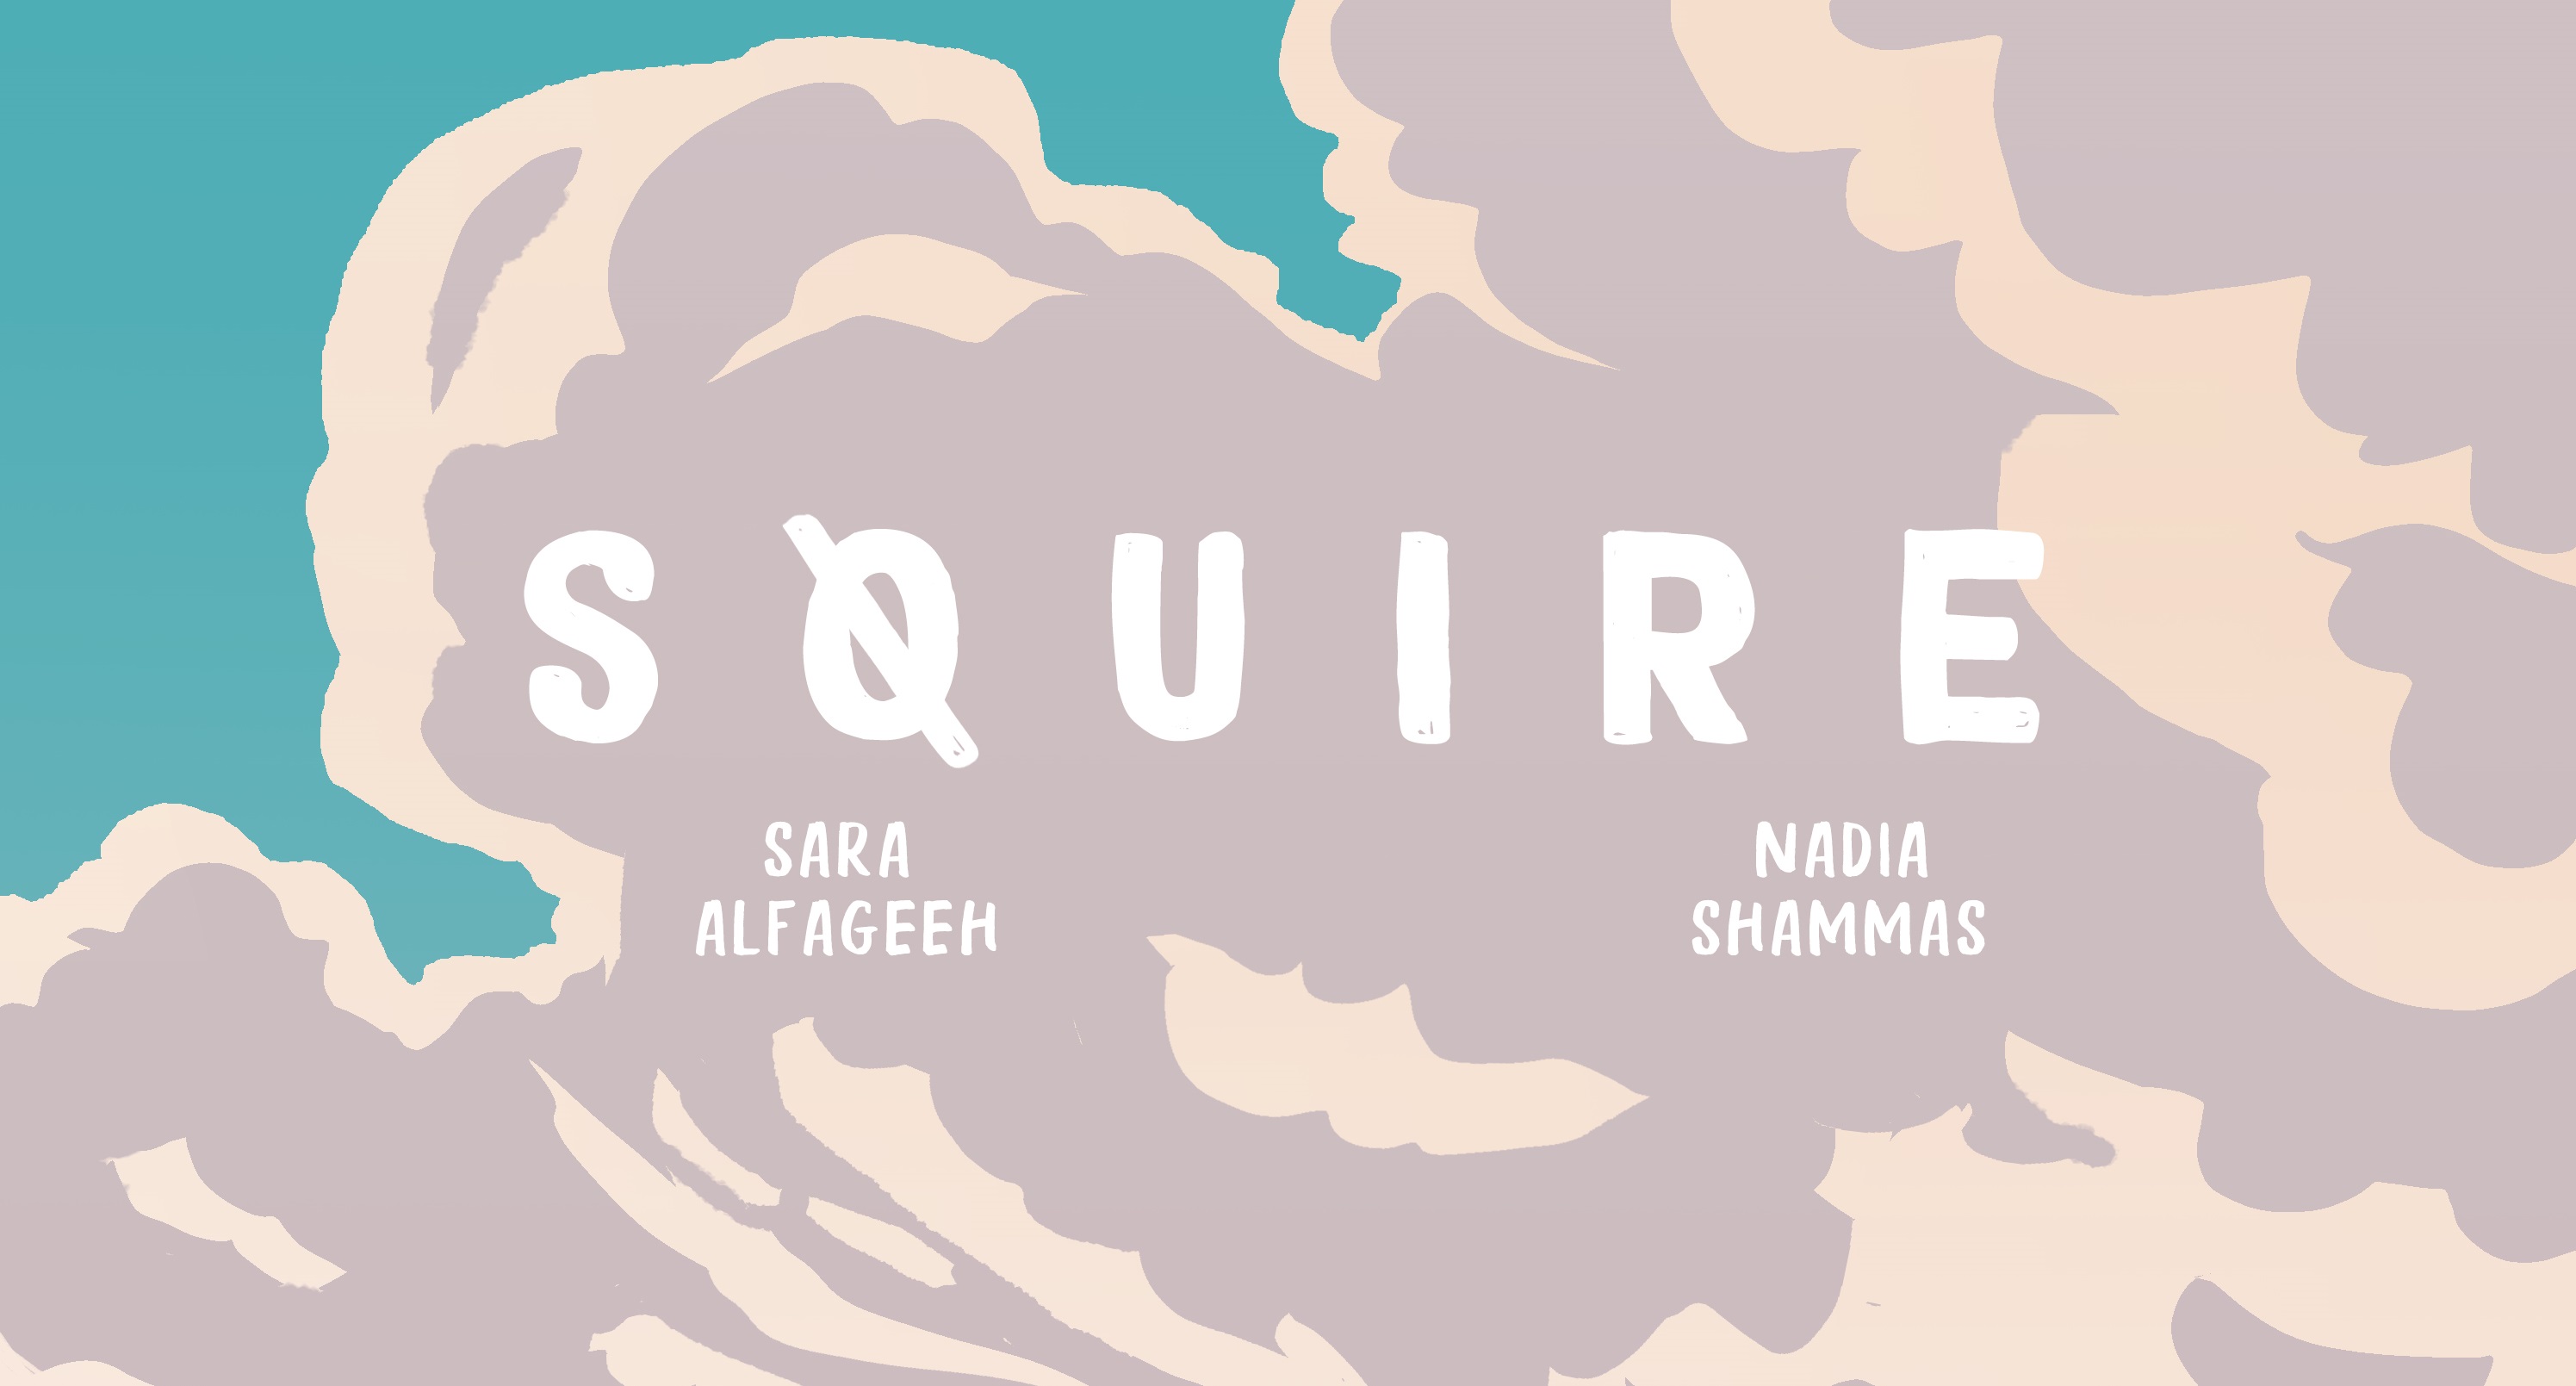 Squire by Sara Alfageeh